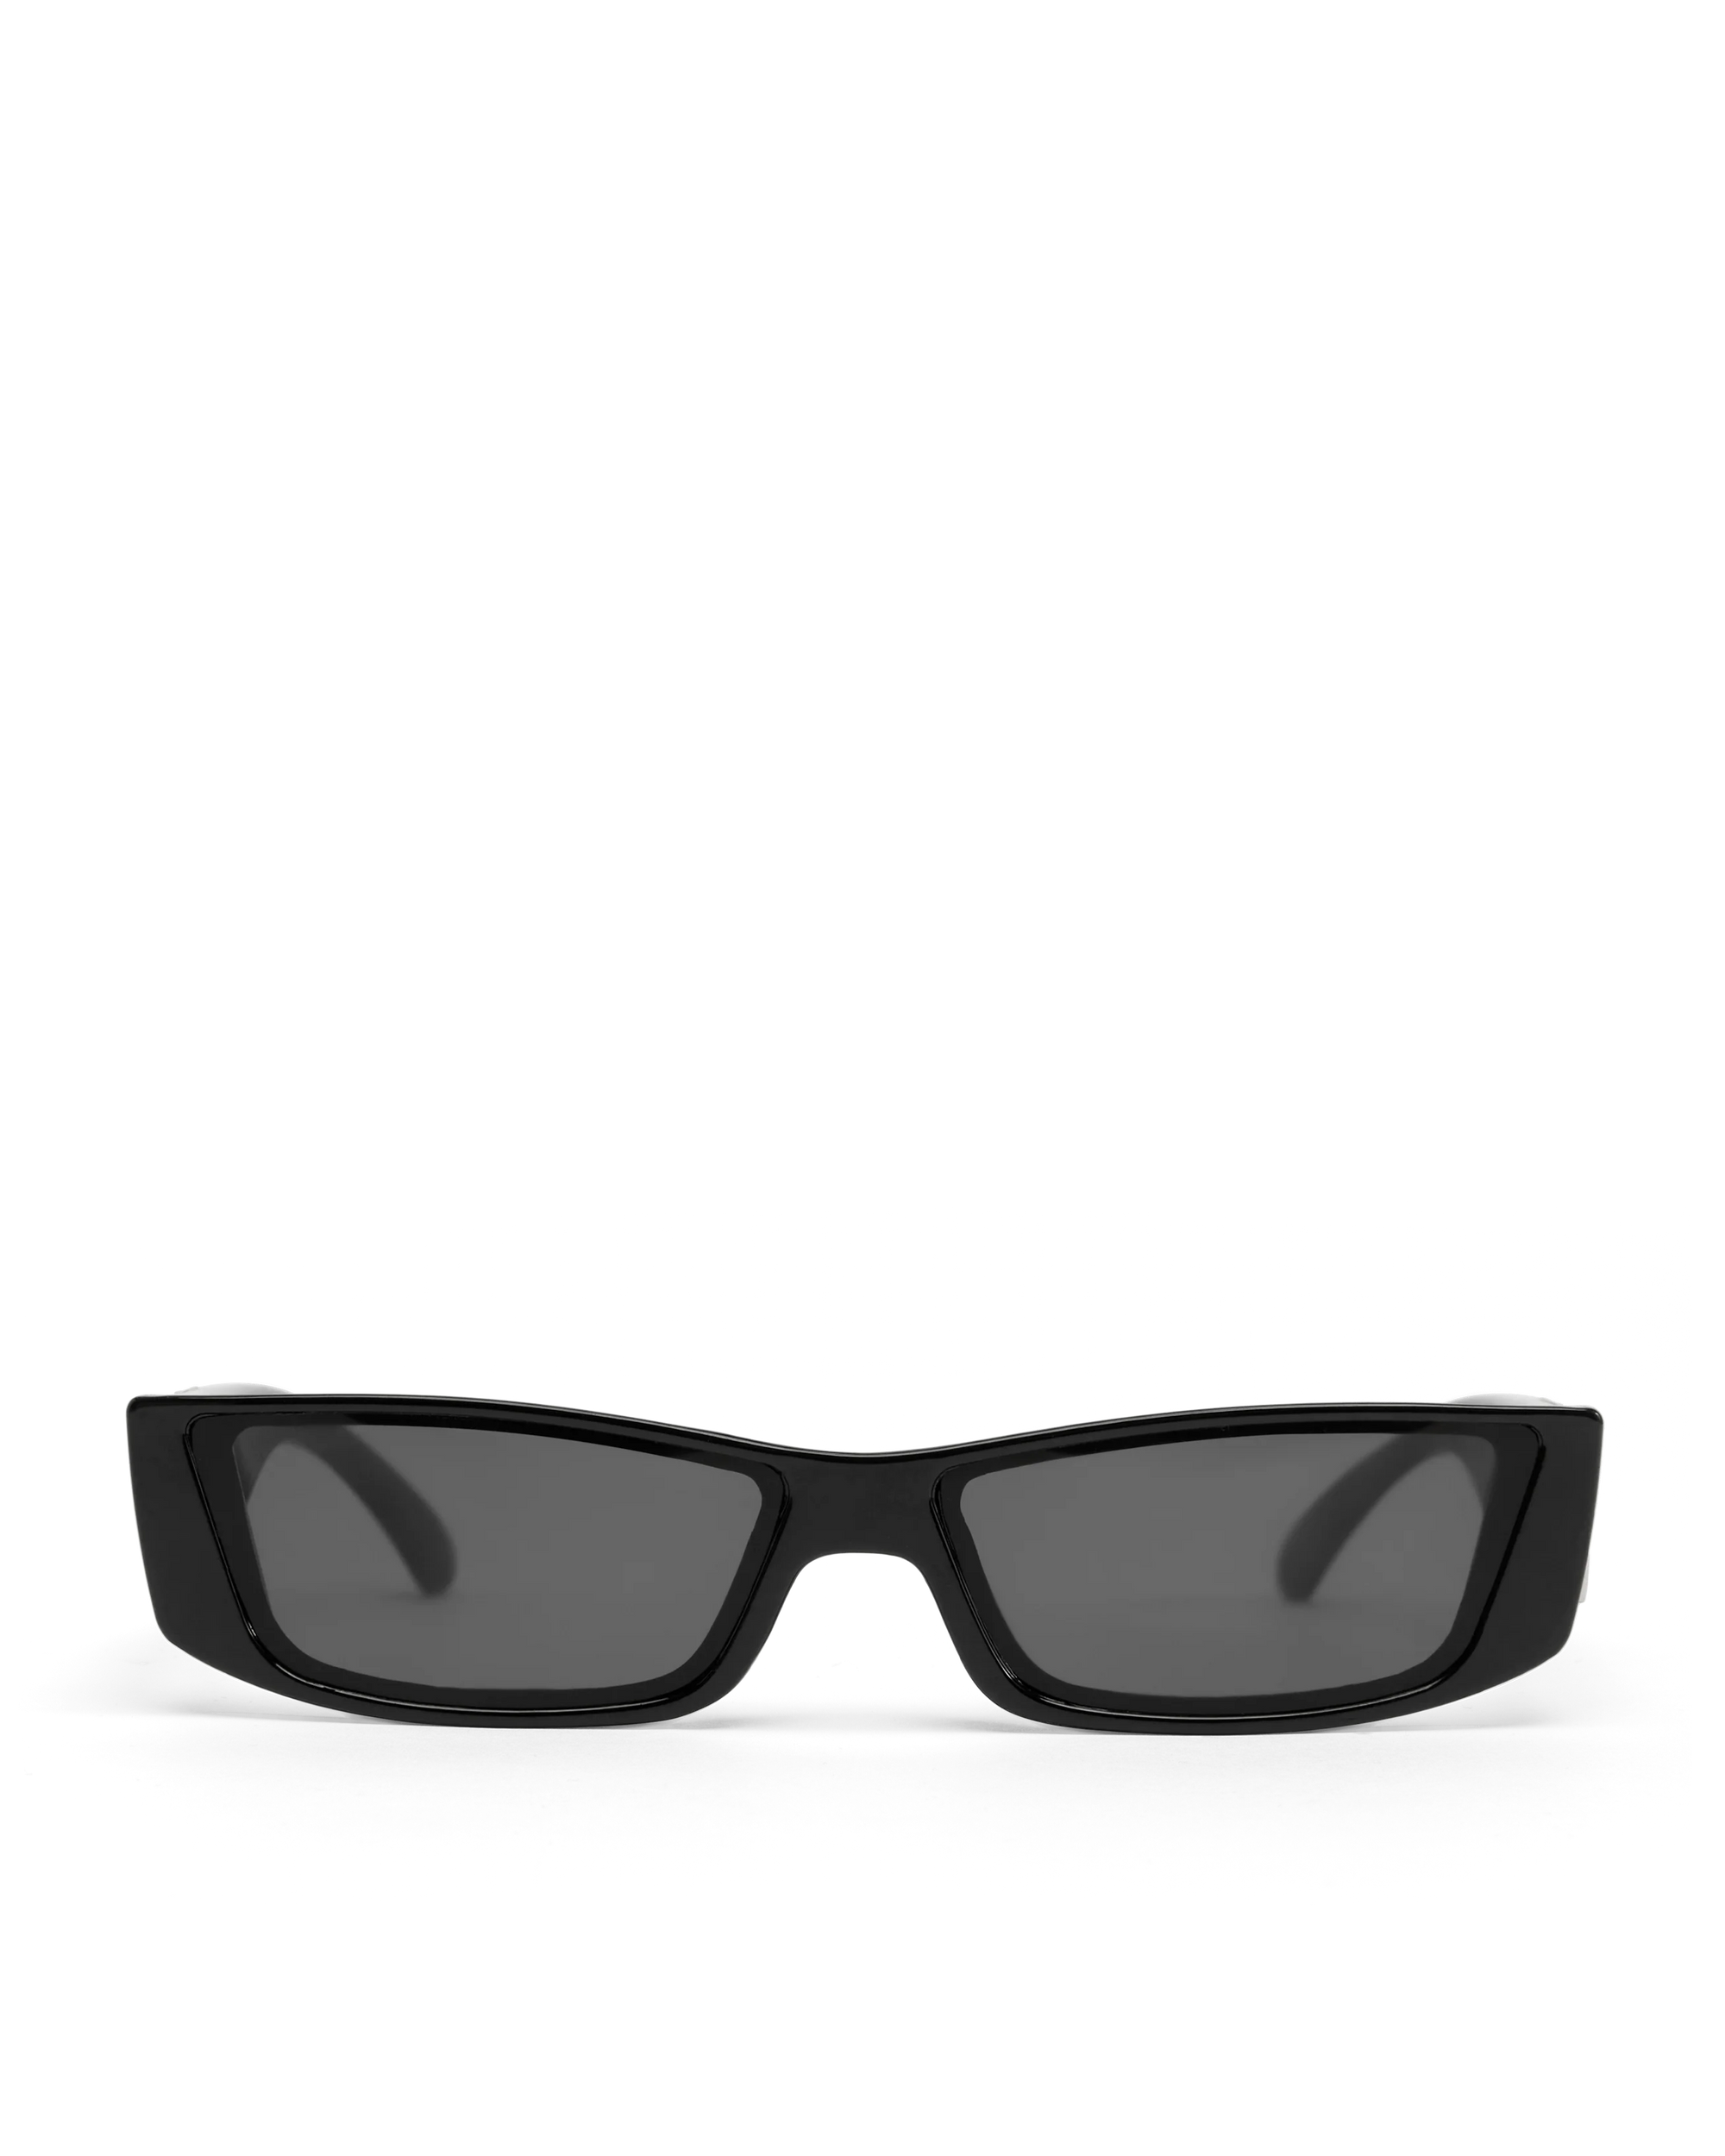 The Devon Sunglasses